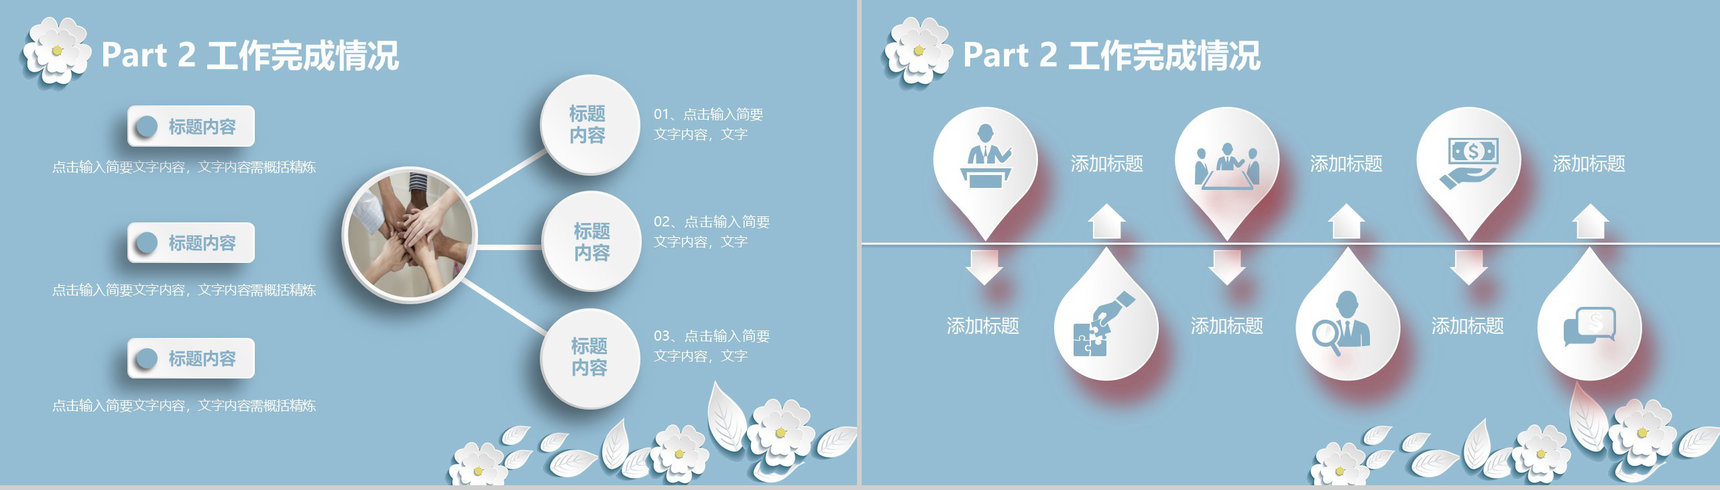 清新简约中国风商务工作总结汇报PPT模板-9